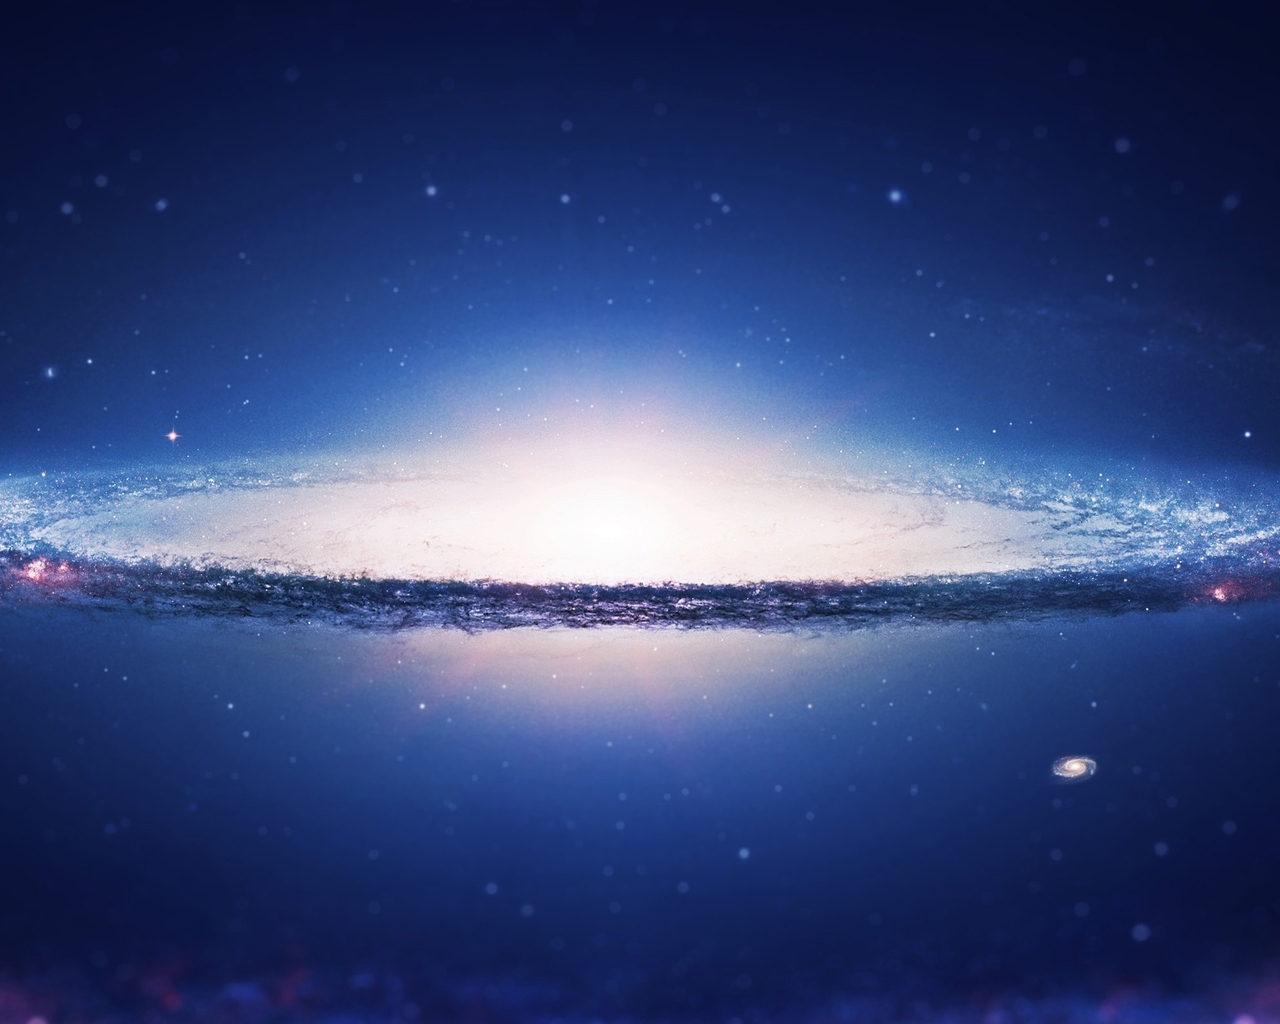 Картинка: Галактика, Сомбреро, гало, диск, центр, свет, звёзды, ребро, космос, пространство